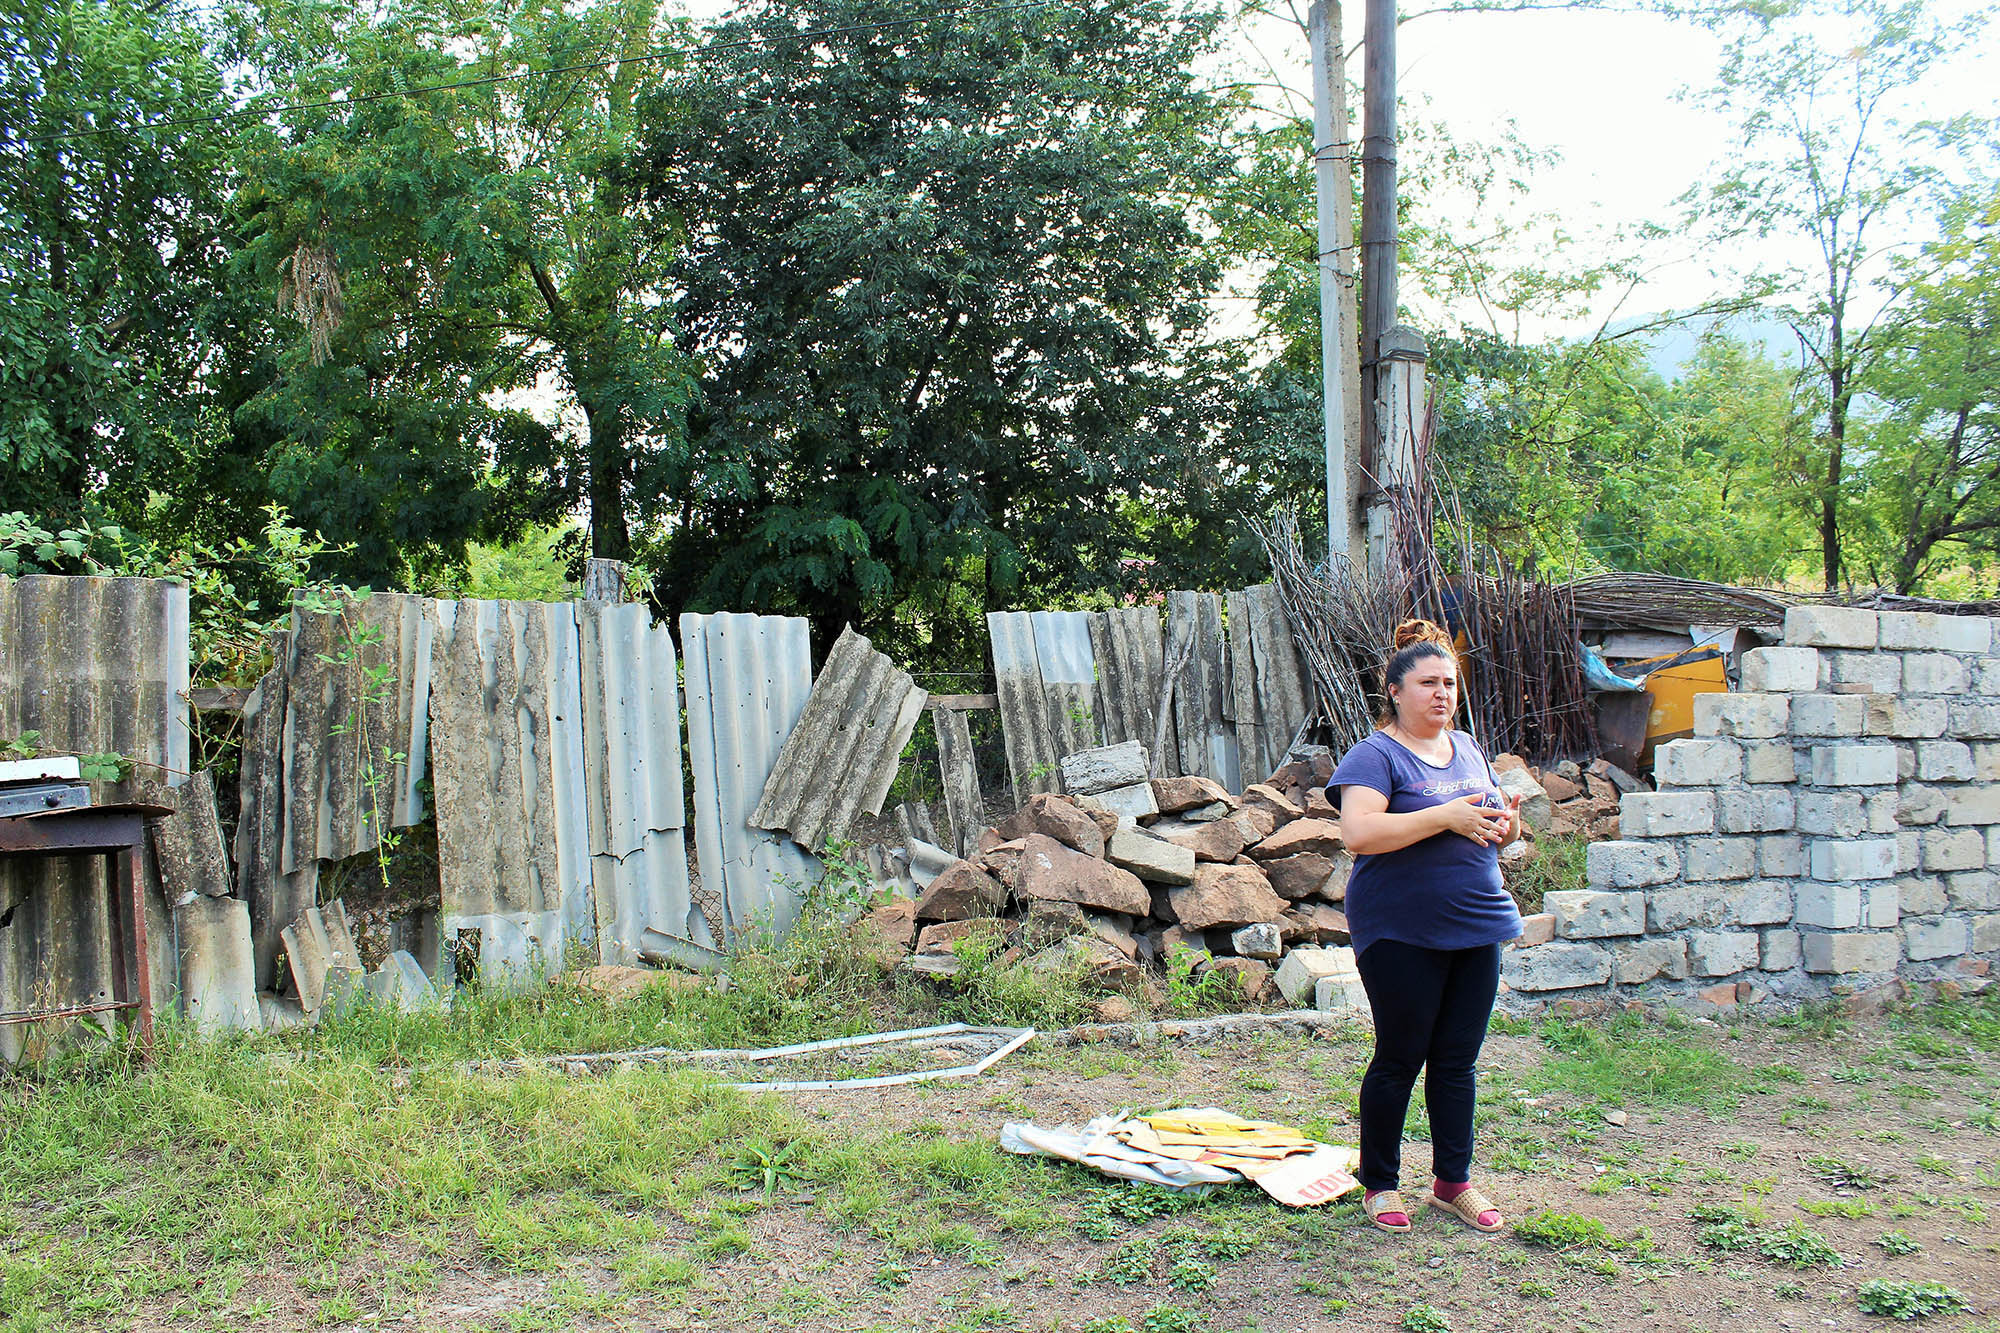 Дочь Азиза Азизова показывает, как пострадал дом её отца во время обострения конфликта. Фото: Сеймур Кязымов / OC Media